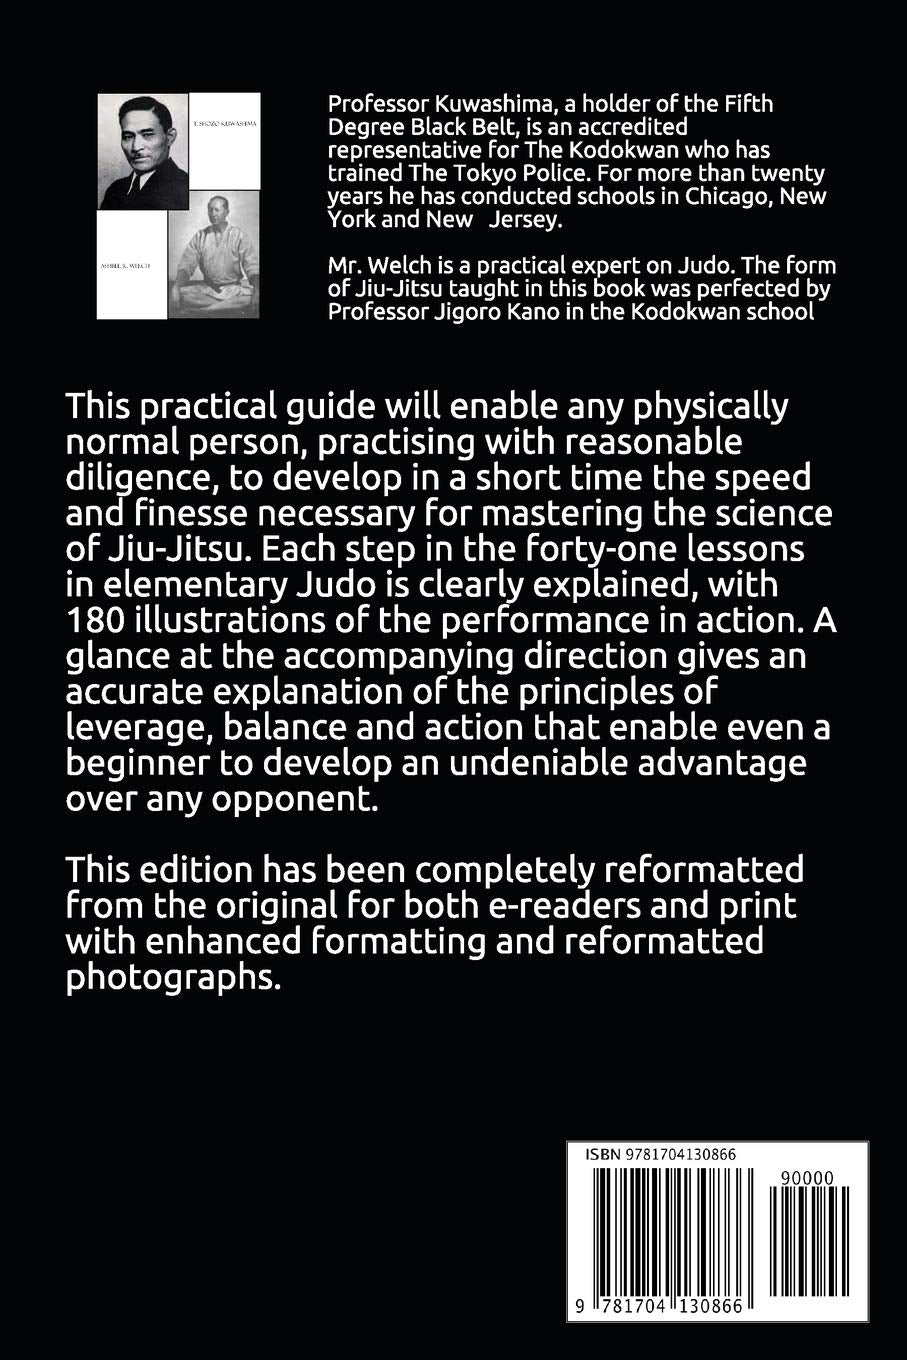 Judo 41 lessons In The Modern Science Of Jiu-Jitsu Book by Shozo Kuwashima (Reprint)